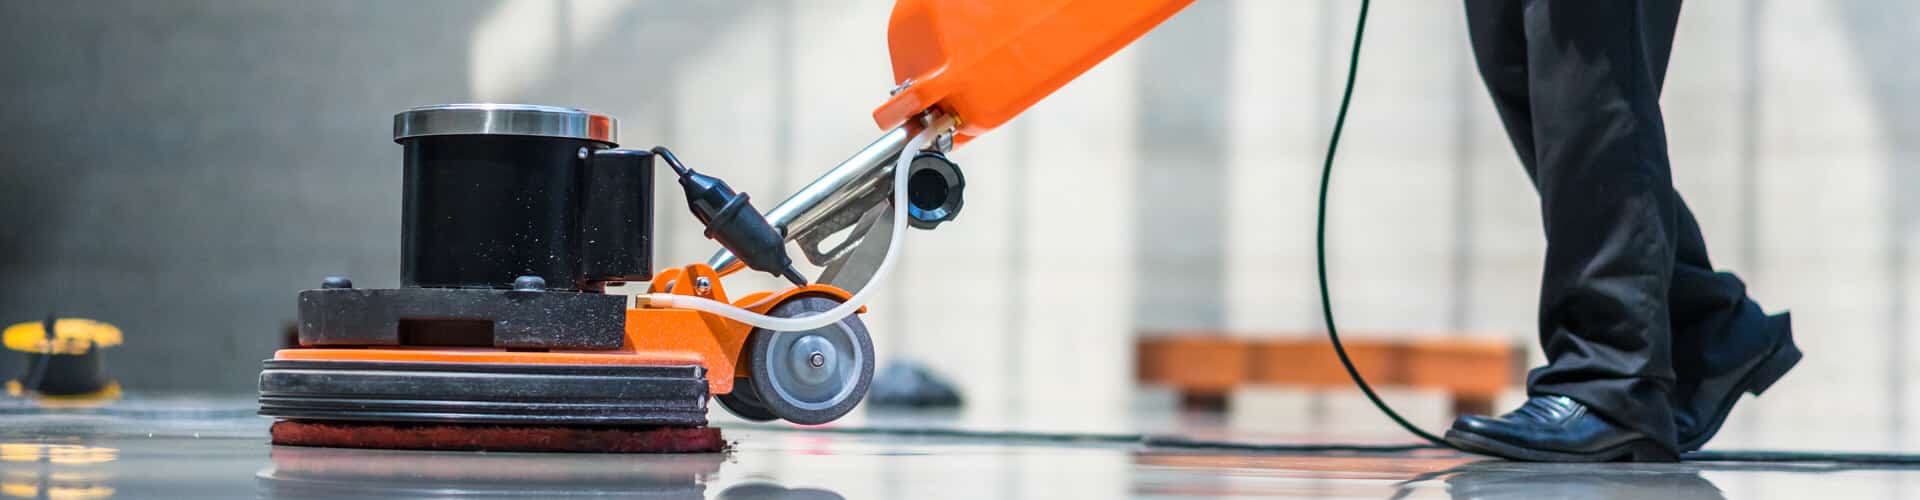 Mand udfører gulvpolering med orange maskine